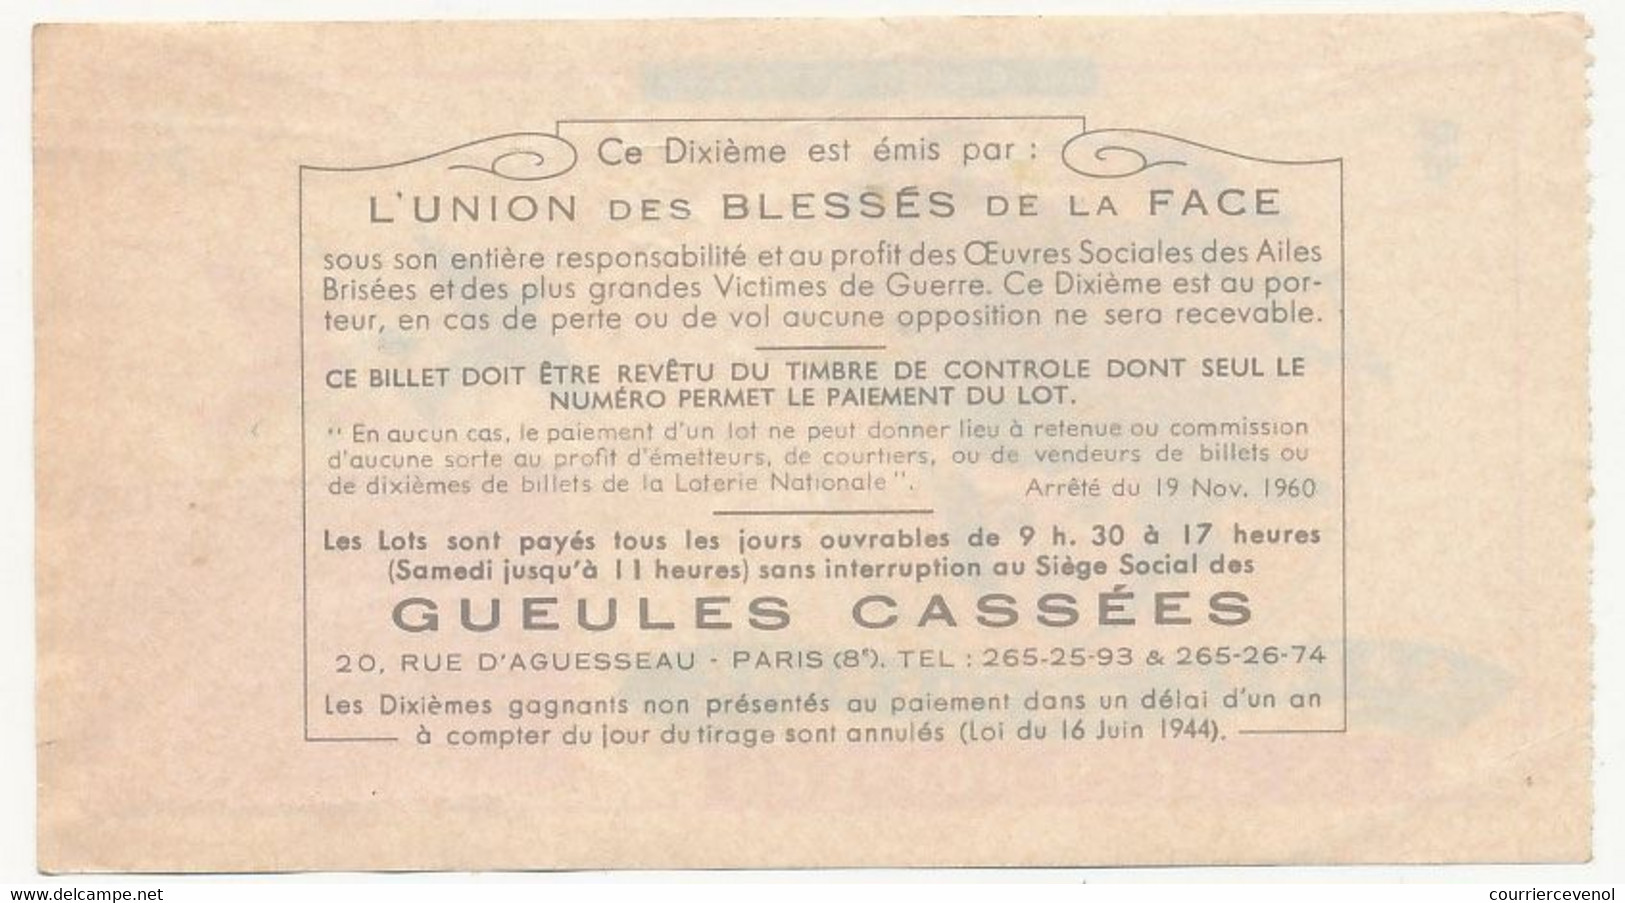 FRANCE - Loterie Nationale - 1/10ème - Les Ailes Brisées - Sainte Catherine - 1974 - Lottery Tickets